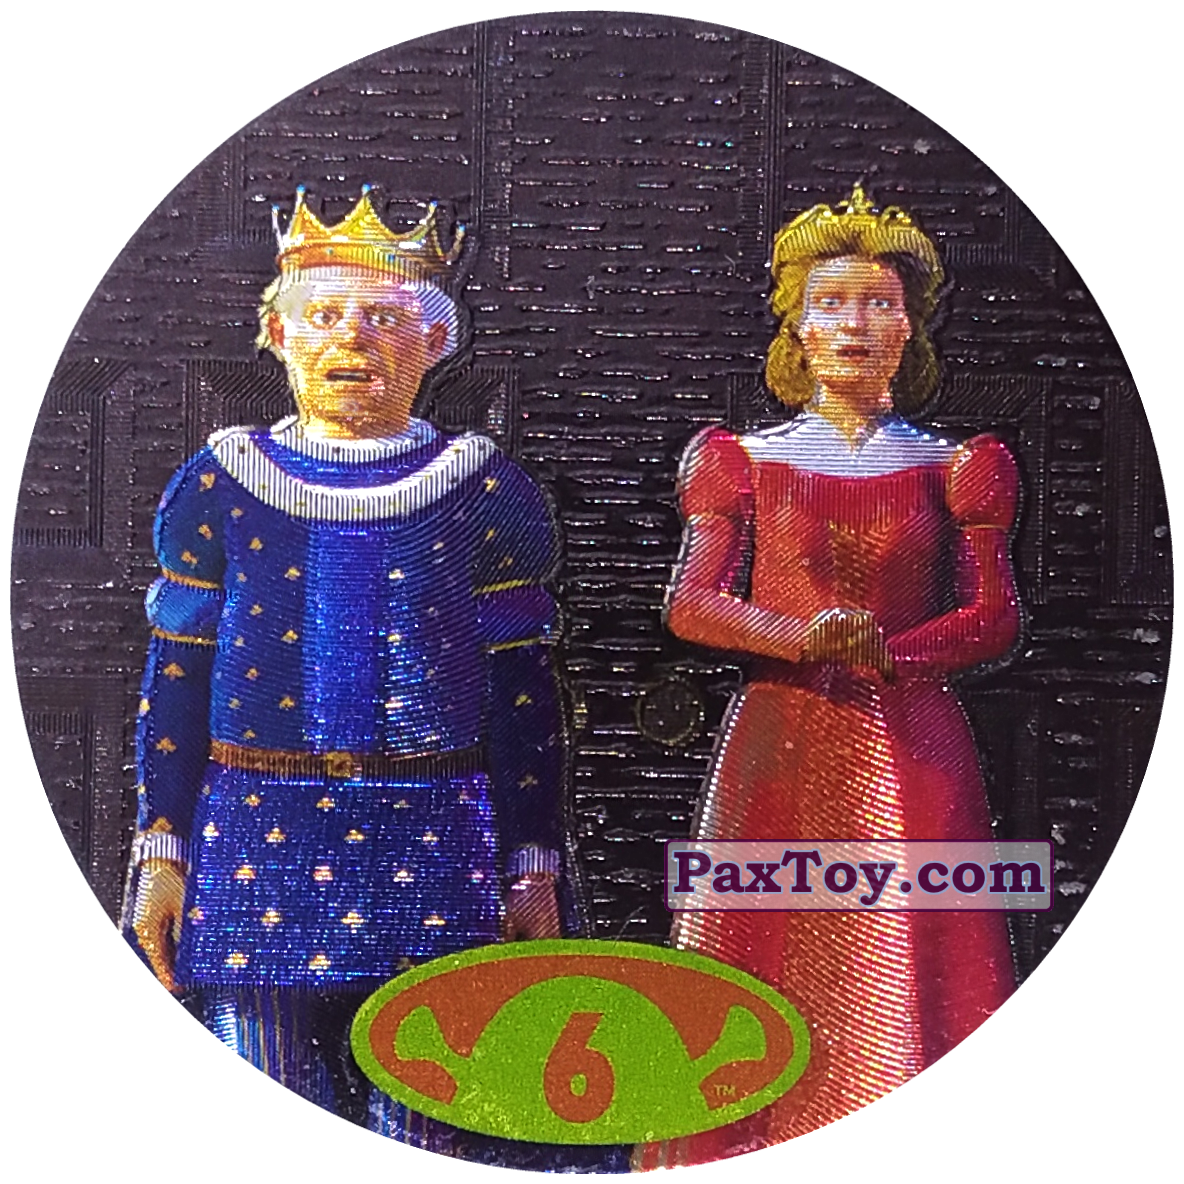 6 King Harold & Queen Lillian.